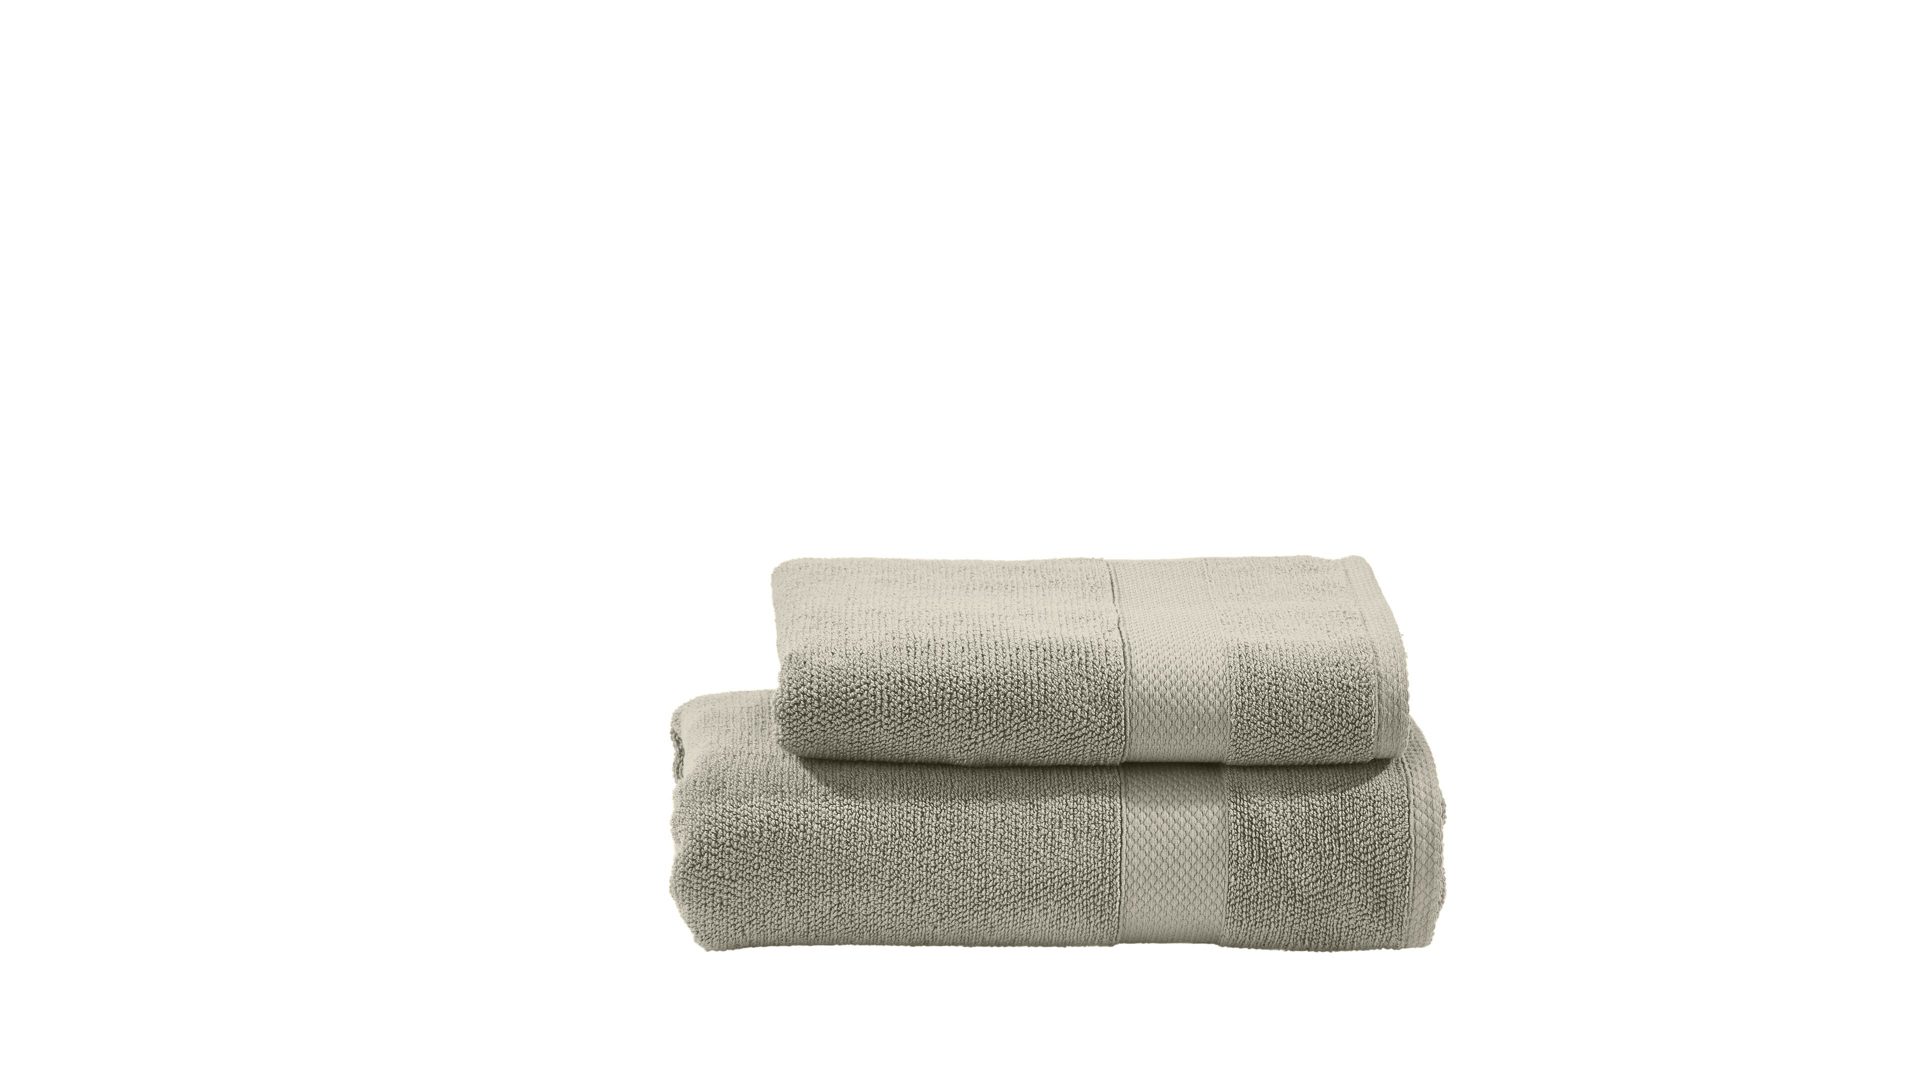 Handtuch-Set Done® be different aus Stoff in Beige DONE® Handtuch-Set Deluxe bzw. Heimtextilien taupefarbene Baumwolle  – zweiteilig